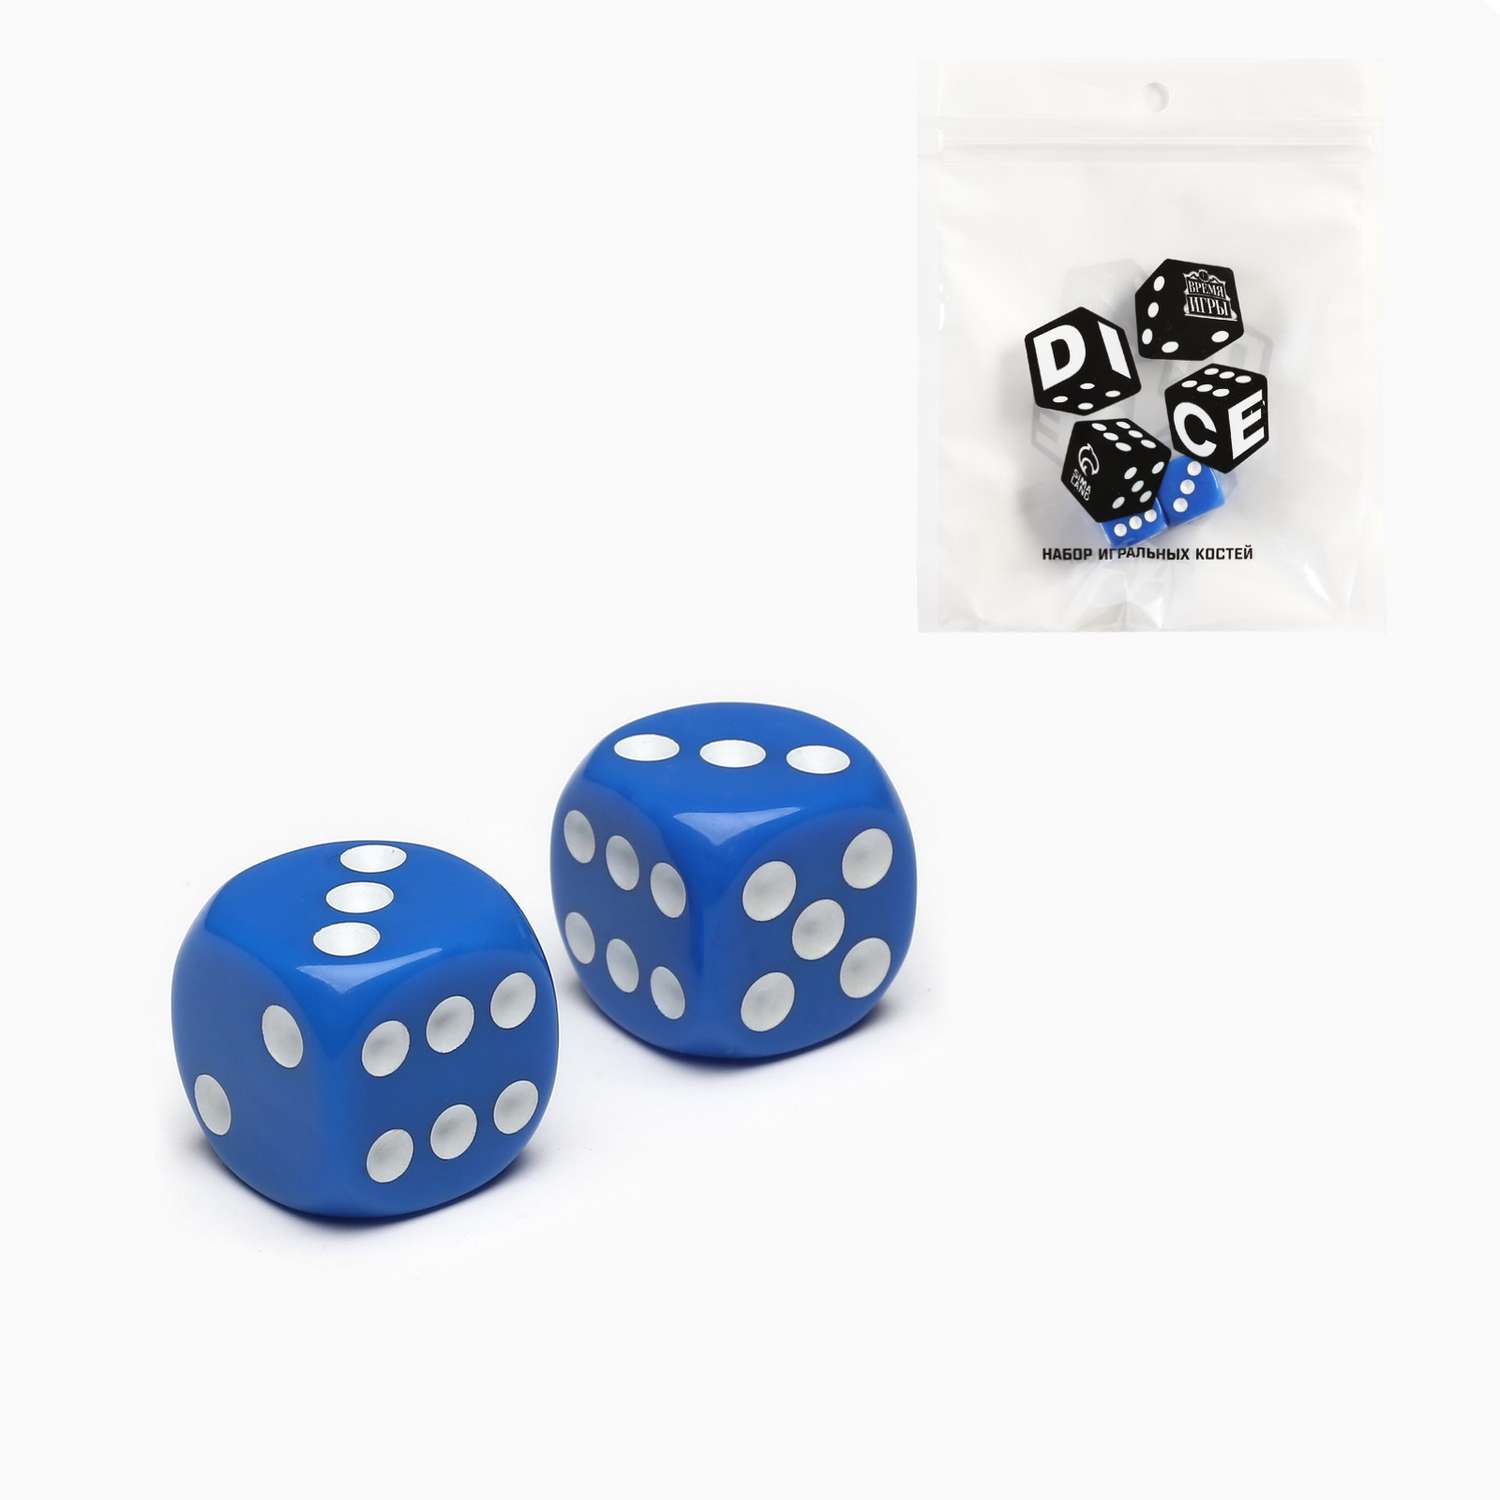 Кубики Sima-Land Игральные «Время игры» 1.6х1.6 см набор 2 шт синие - фото 2